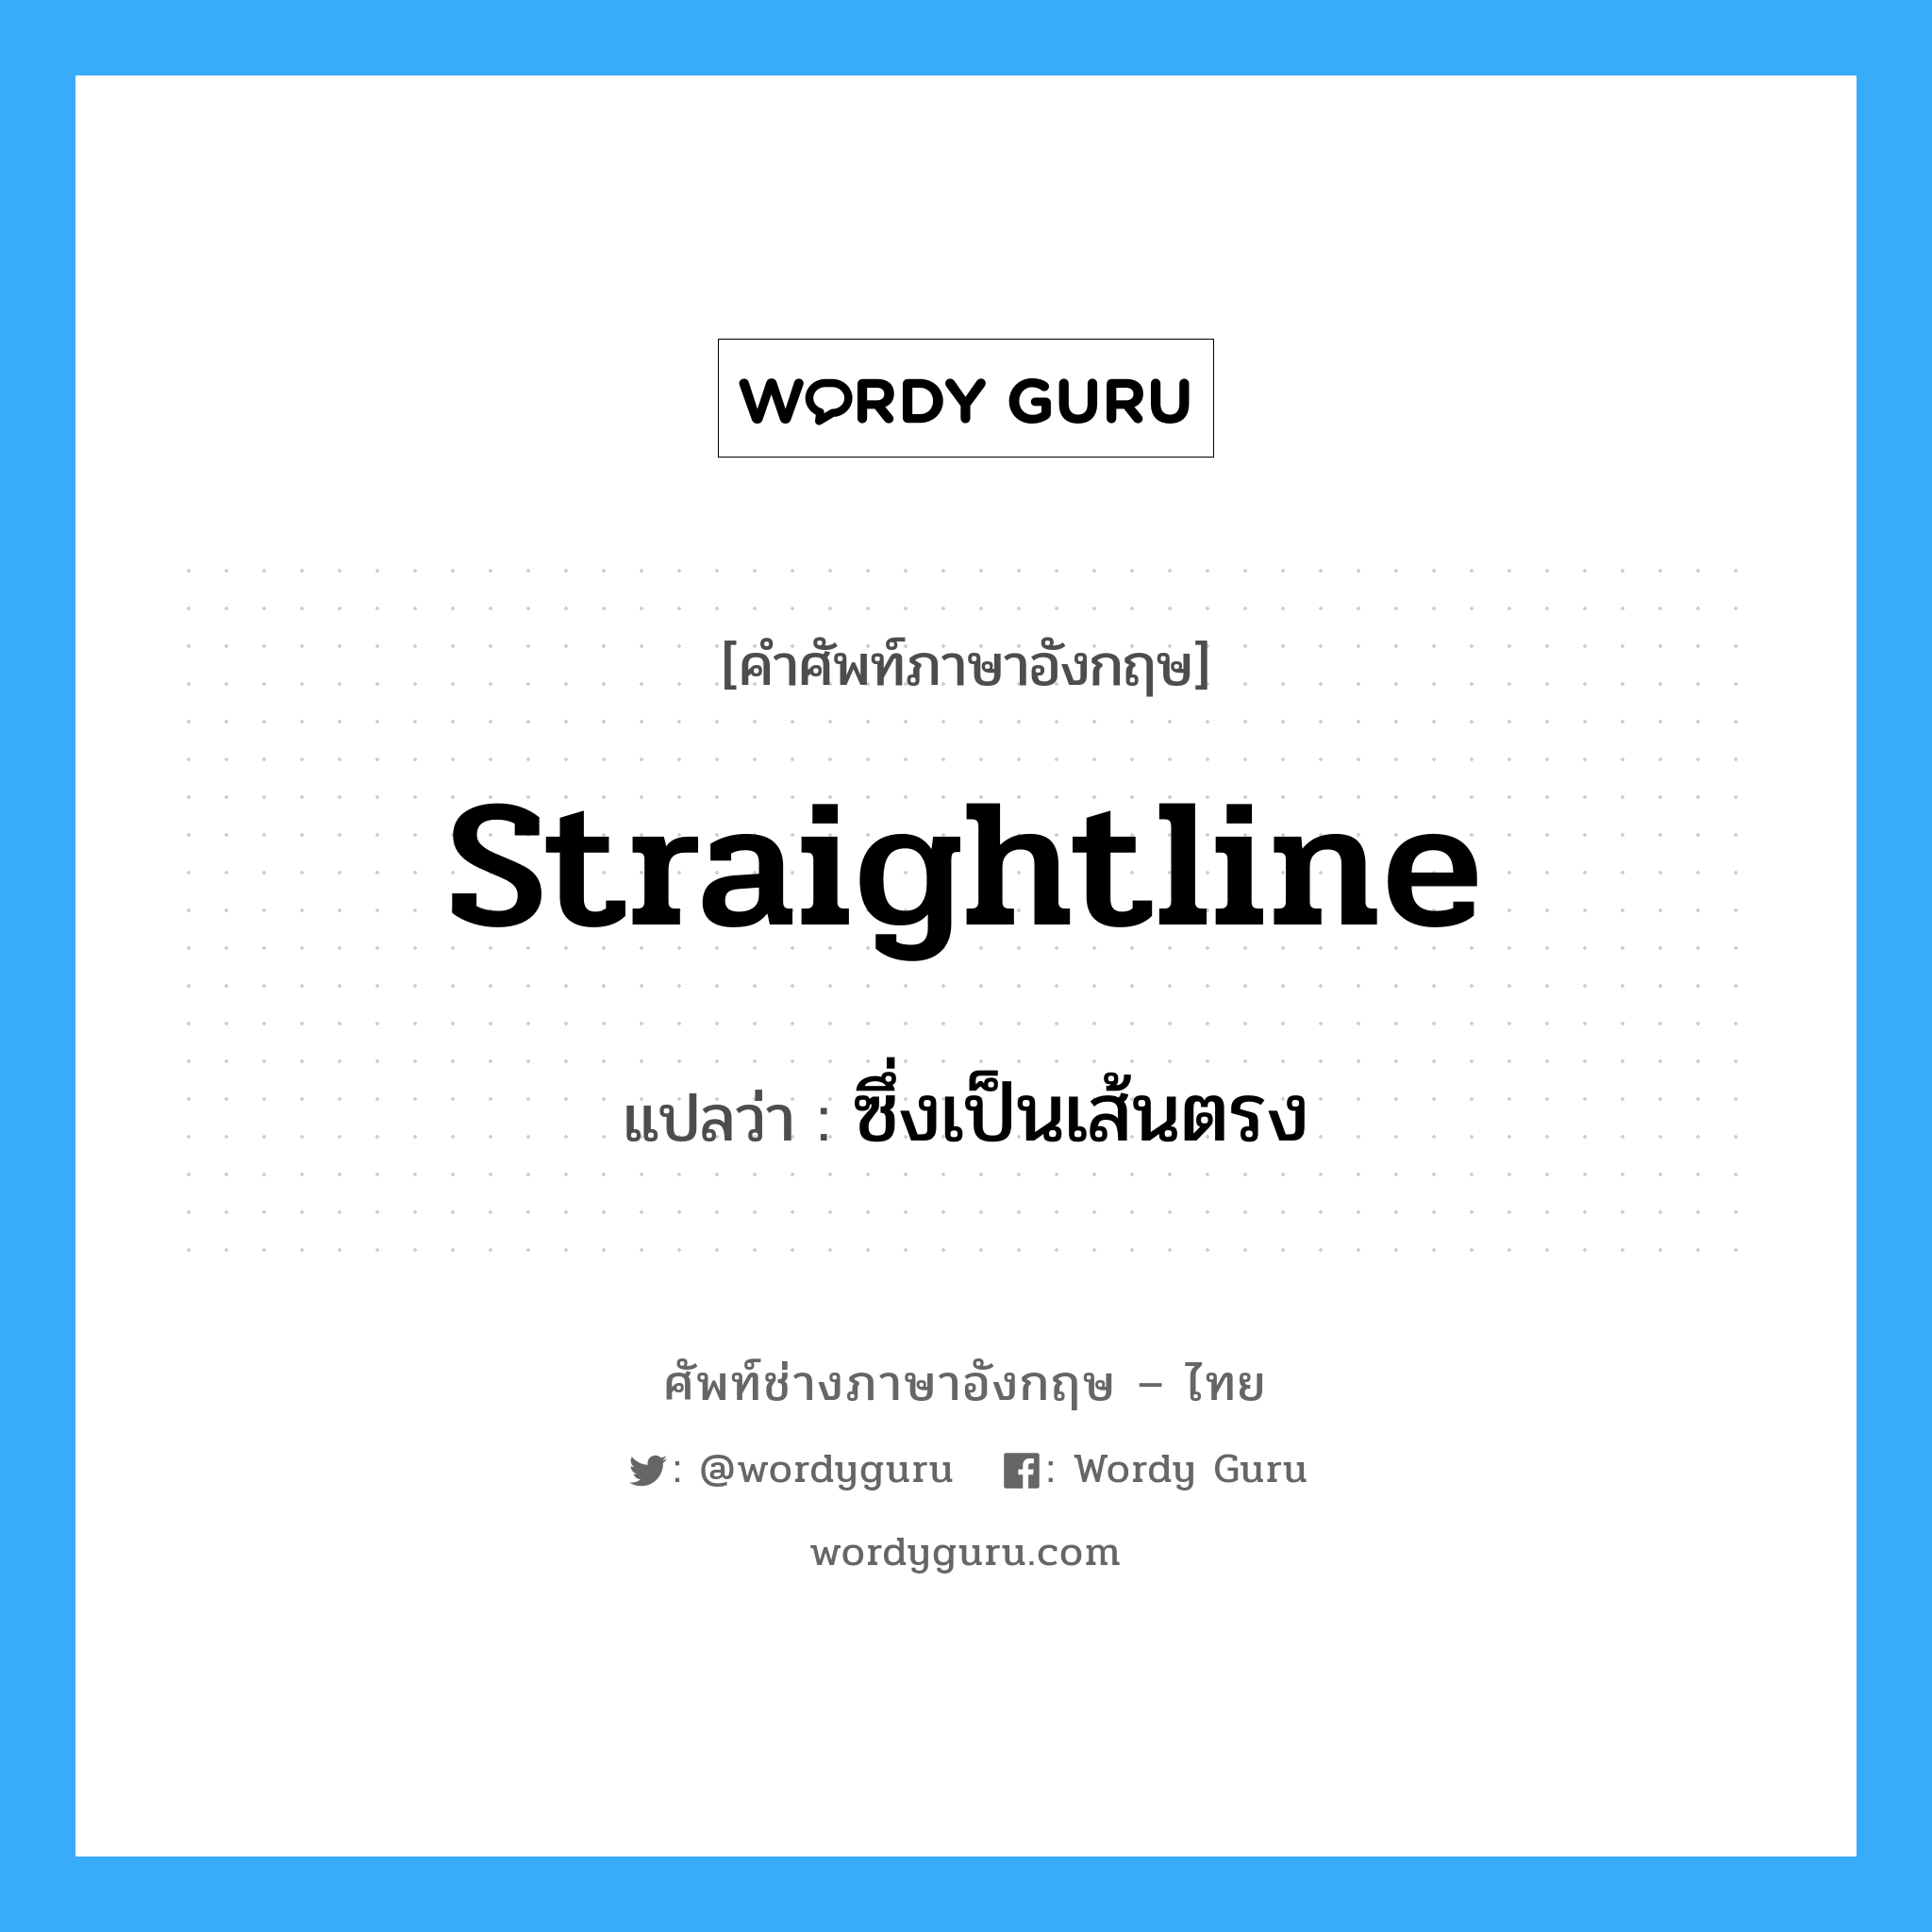 ซึ่งเป็นเส้นตรง ภาษาอังกฤษ?, คำศัพท์ช่างภาษาอังกฤษ - ไทย ซึ่งเป็นเส้นตรง คำศัพท์ภาษาอังกฤษ ซึ่งเป็นเส้นตรง แปลว่า straightline